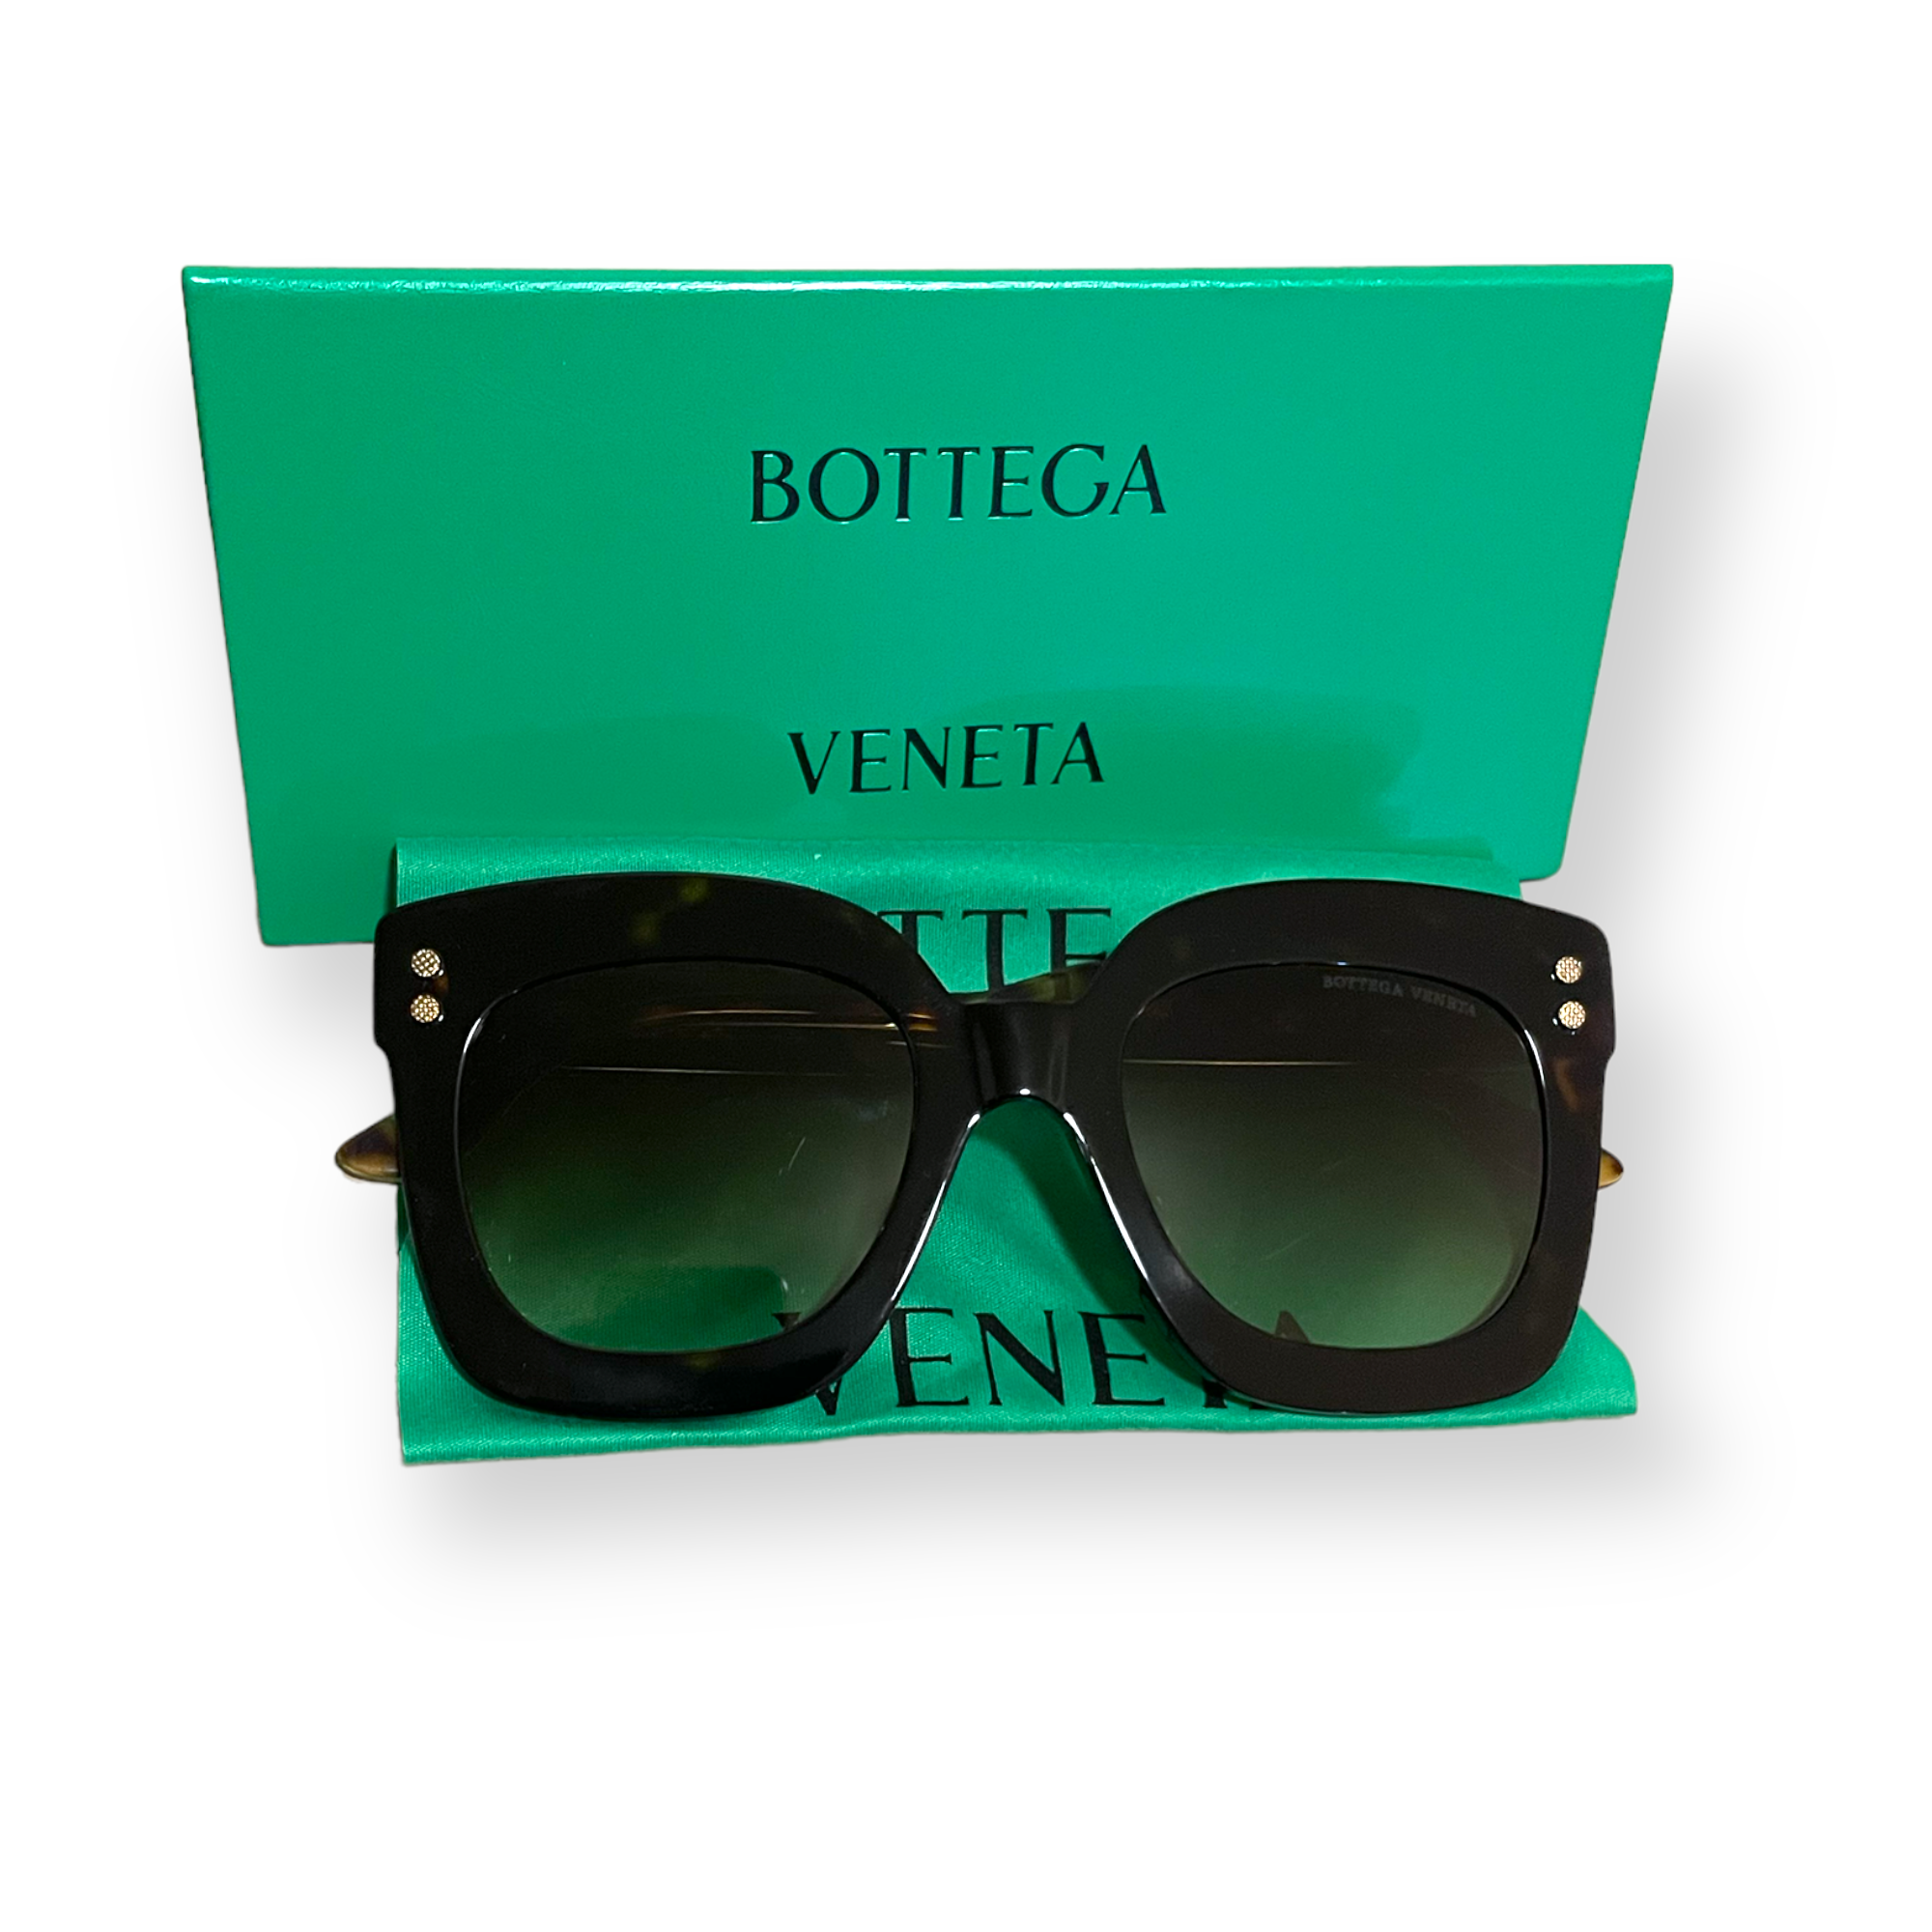 Bottega Veneta Women's 51mm Sunglasses